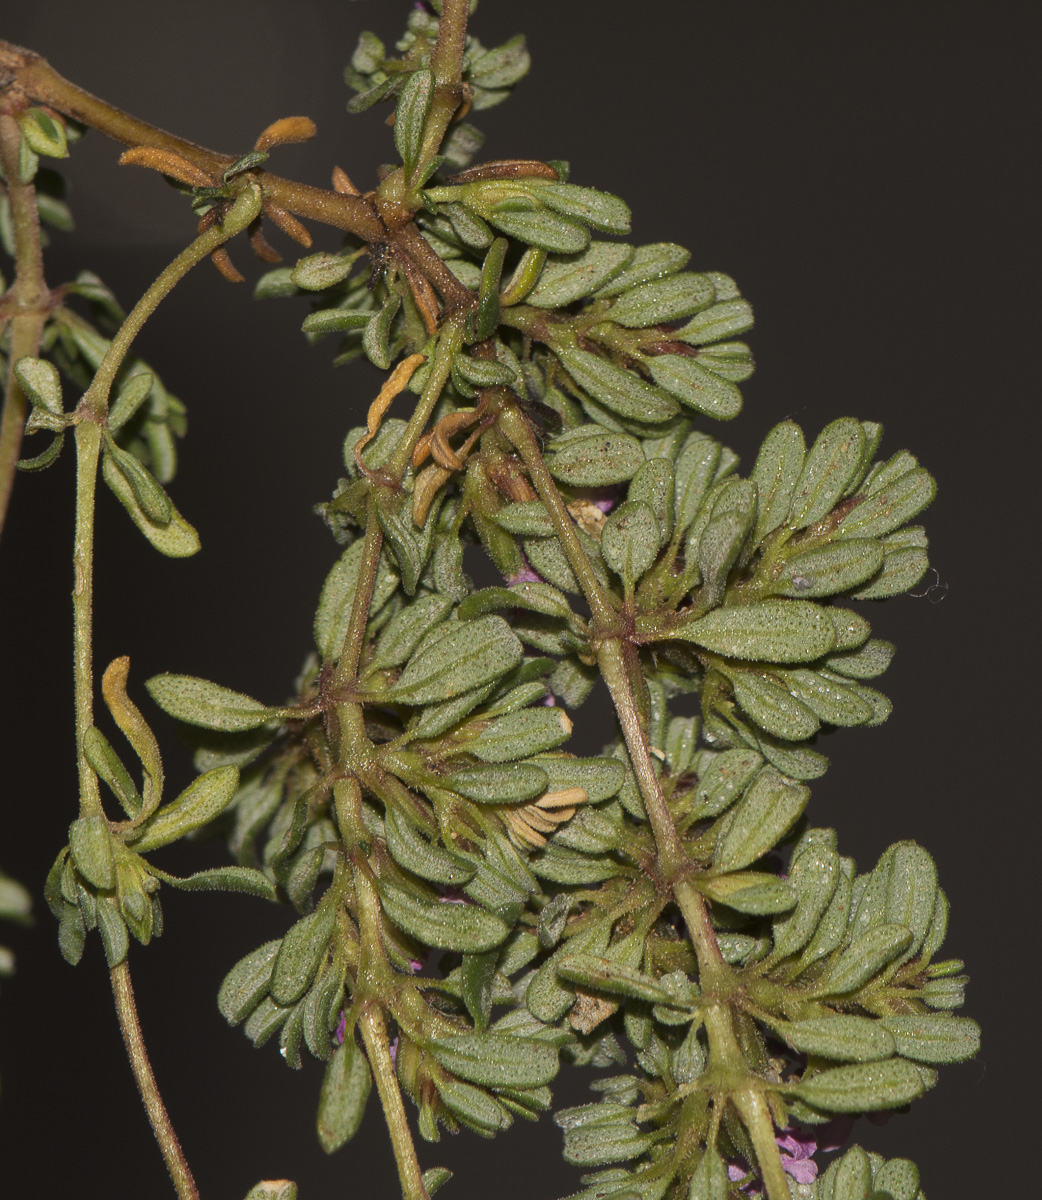 Image of genus Frankenia specimen.